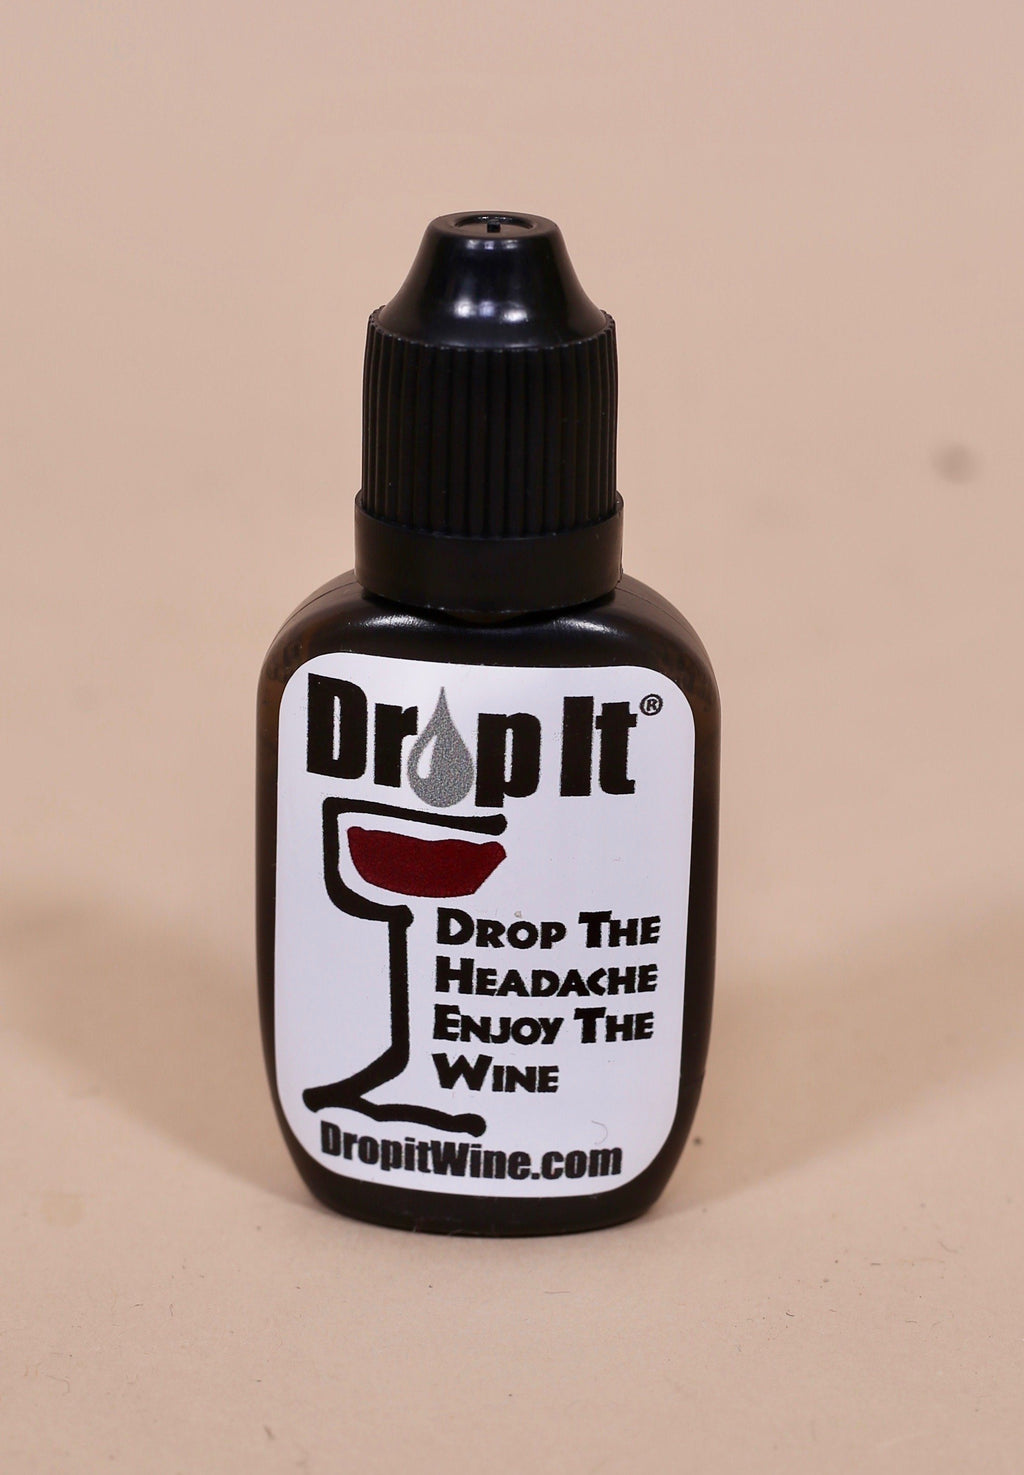 Drop It® Original Wine Drops – Beauline Beauty